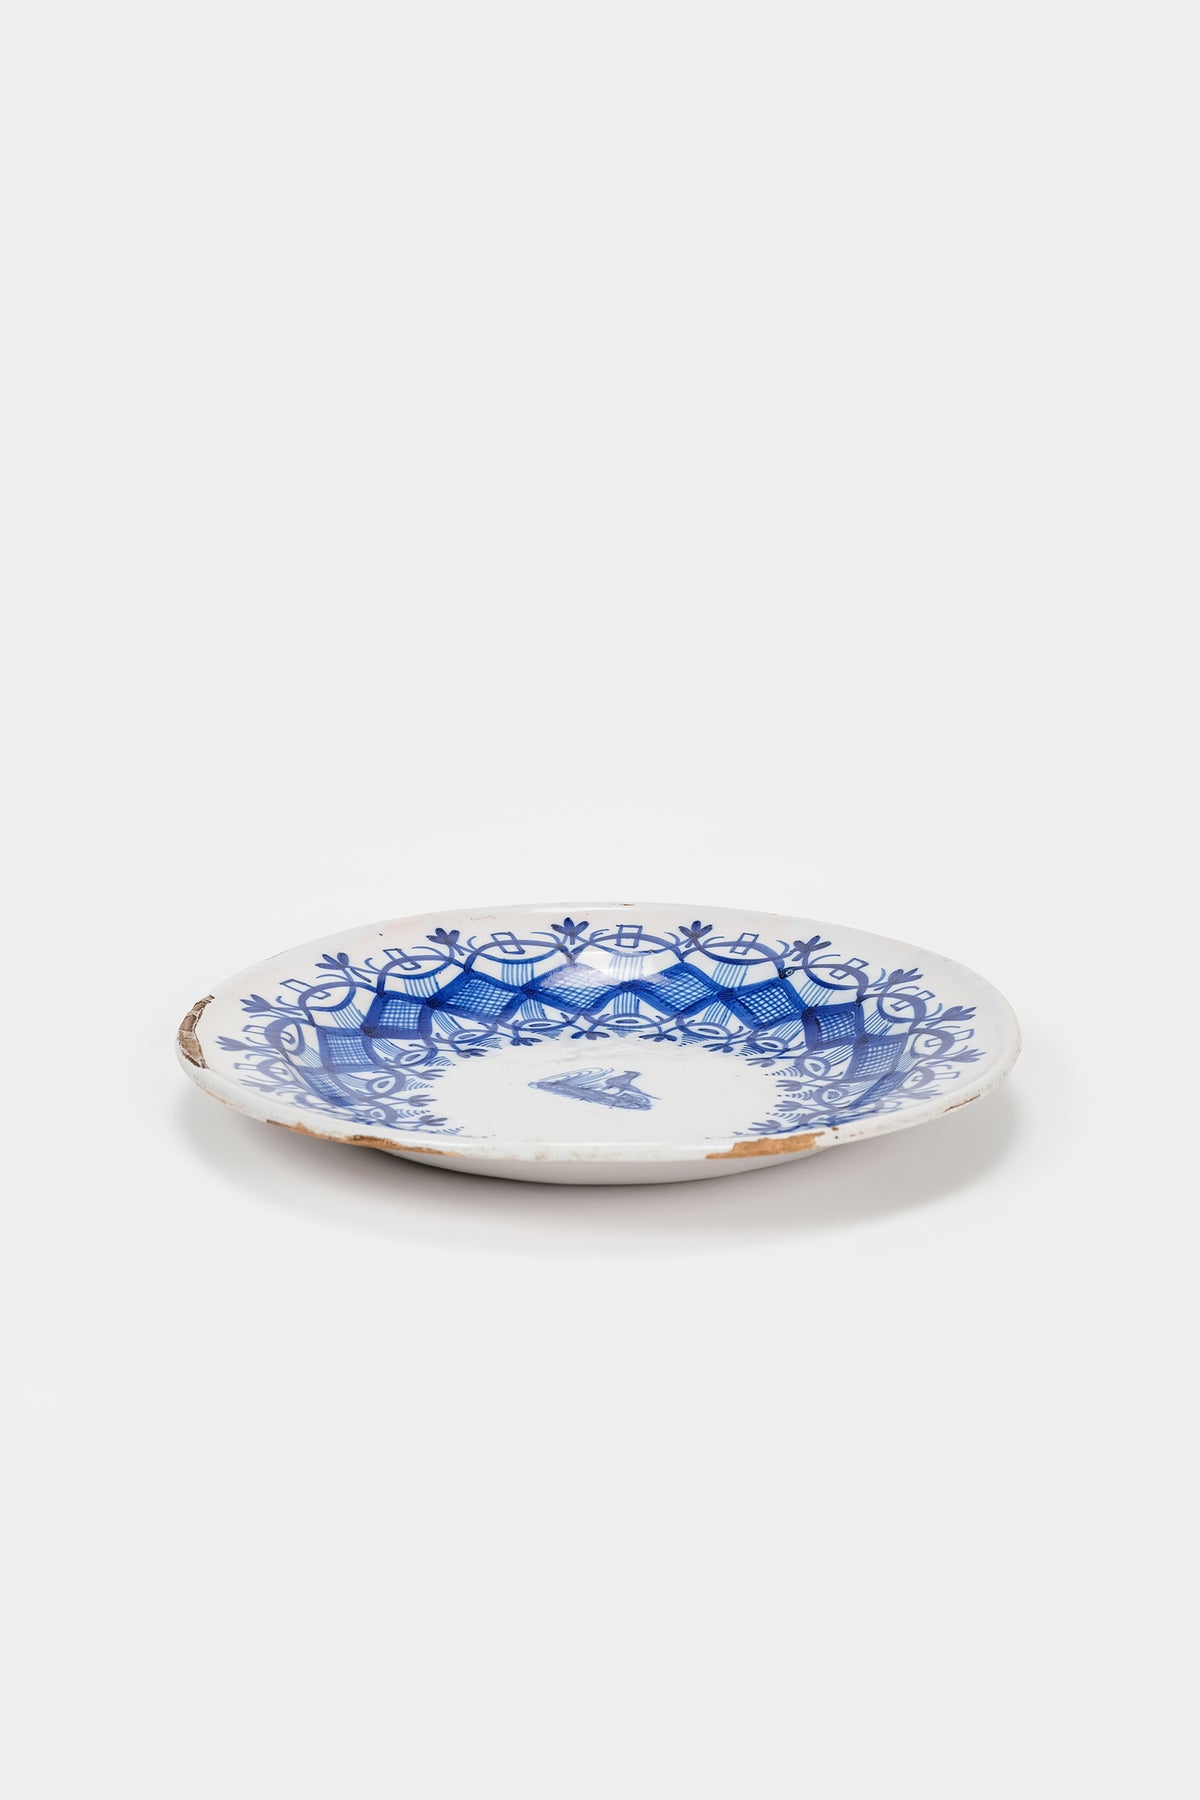 Plate, Manises Valencia Ceramics, 20s